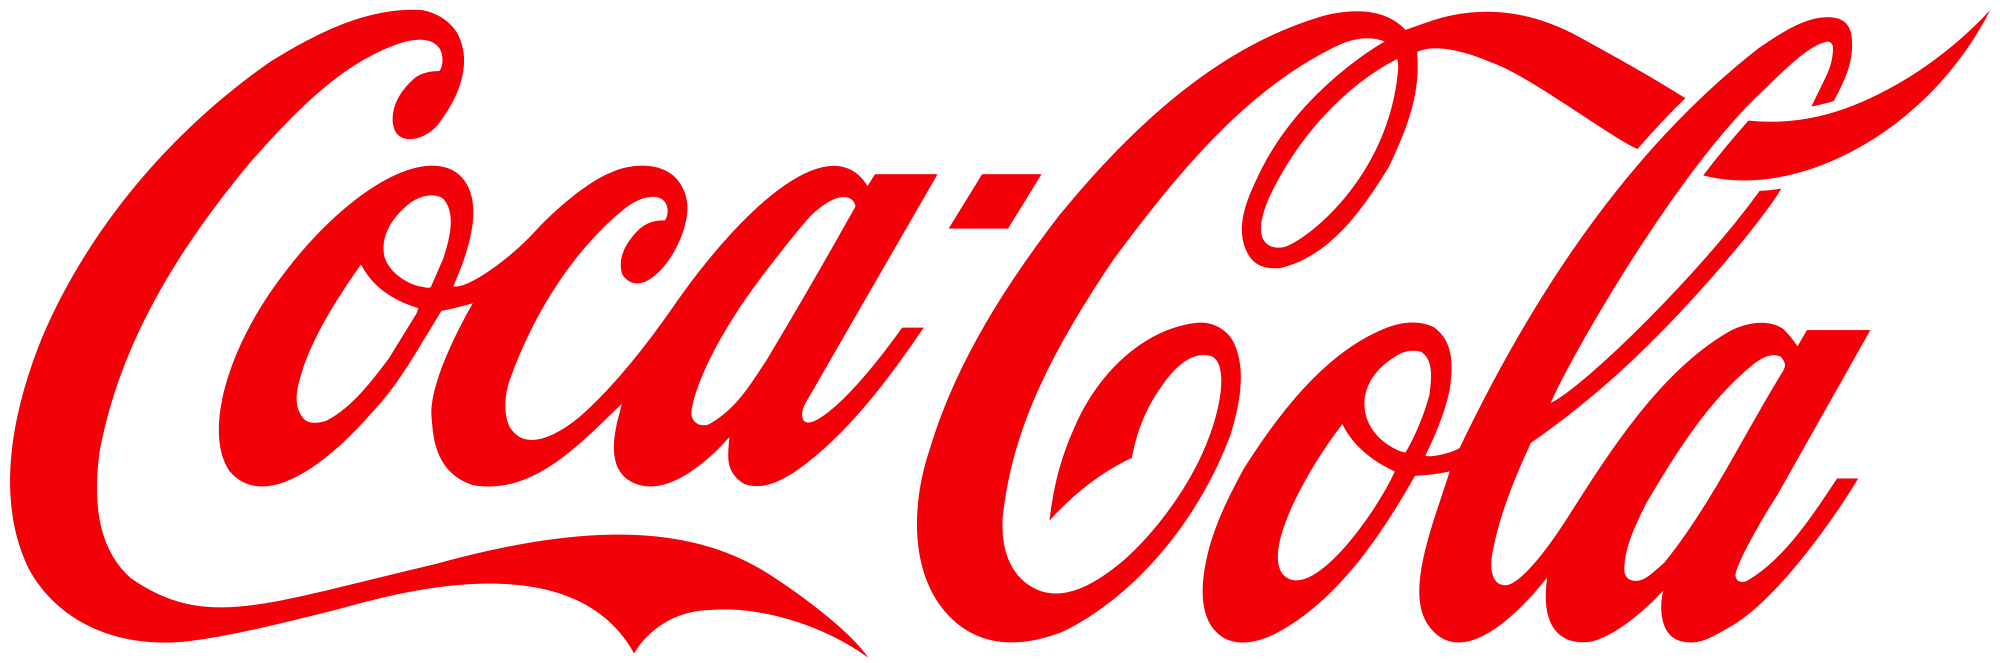 Promoção Coca Cola 2019